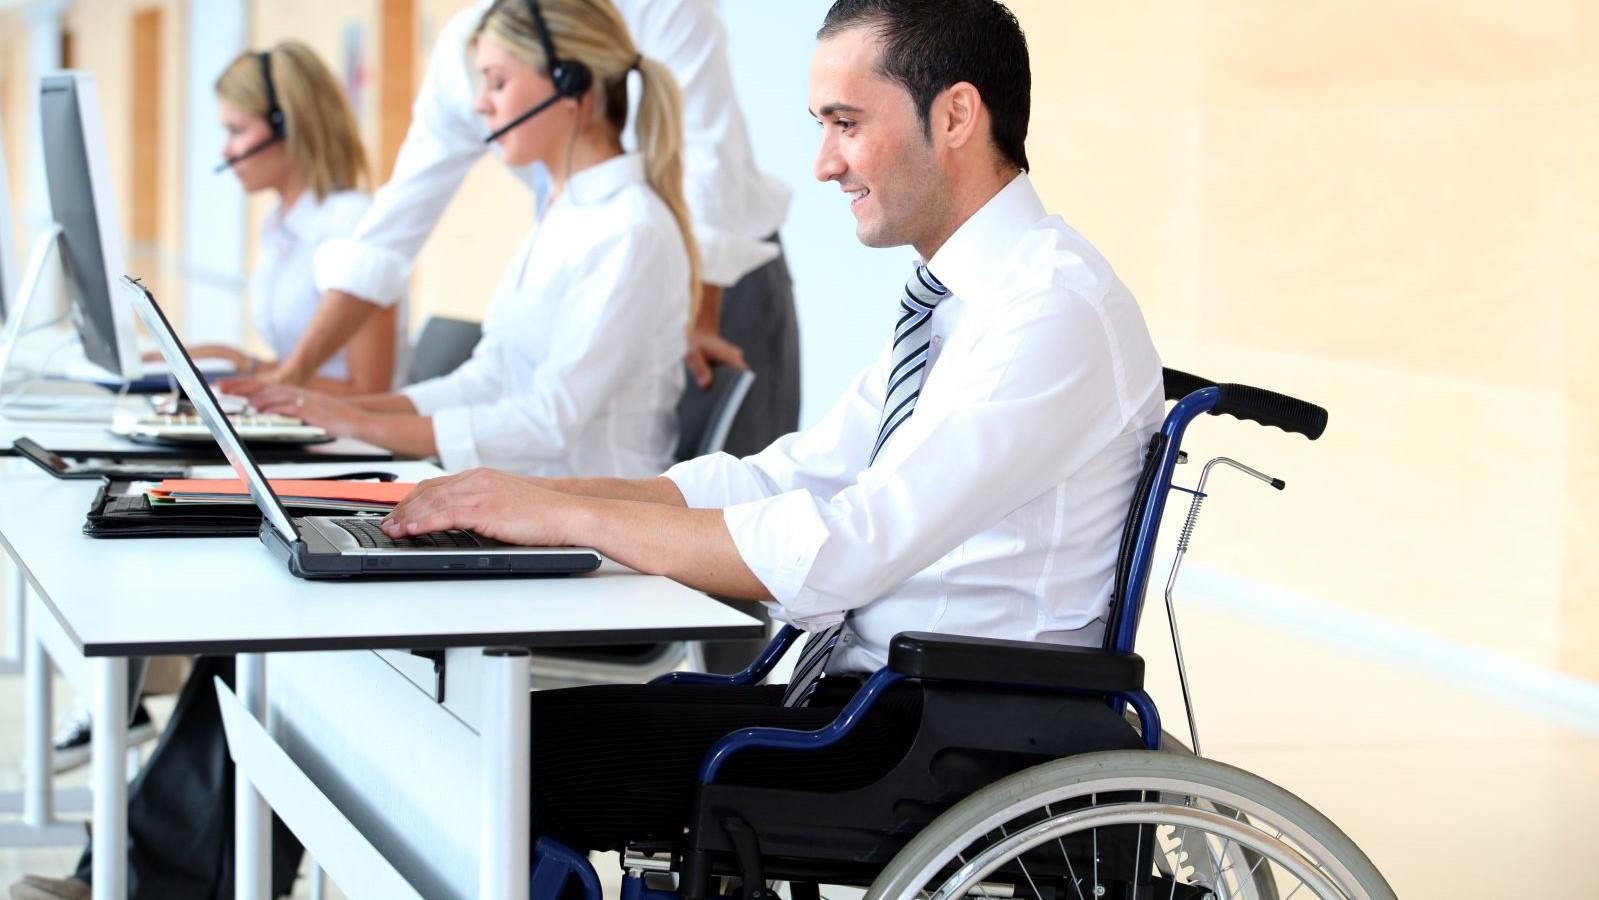 Curso gratuito de capacitação vai ajudar pessoas com deficiência a terem melhor desempenho nas entrevistas